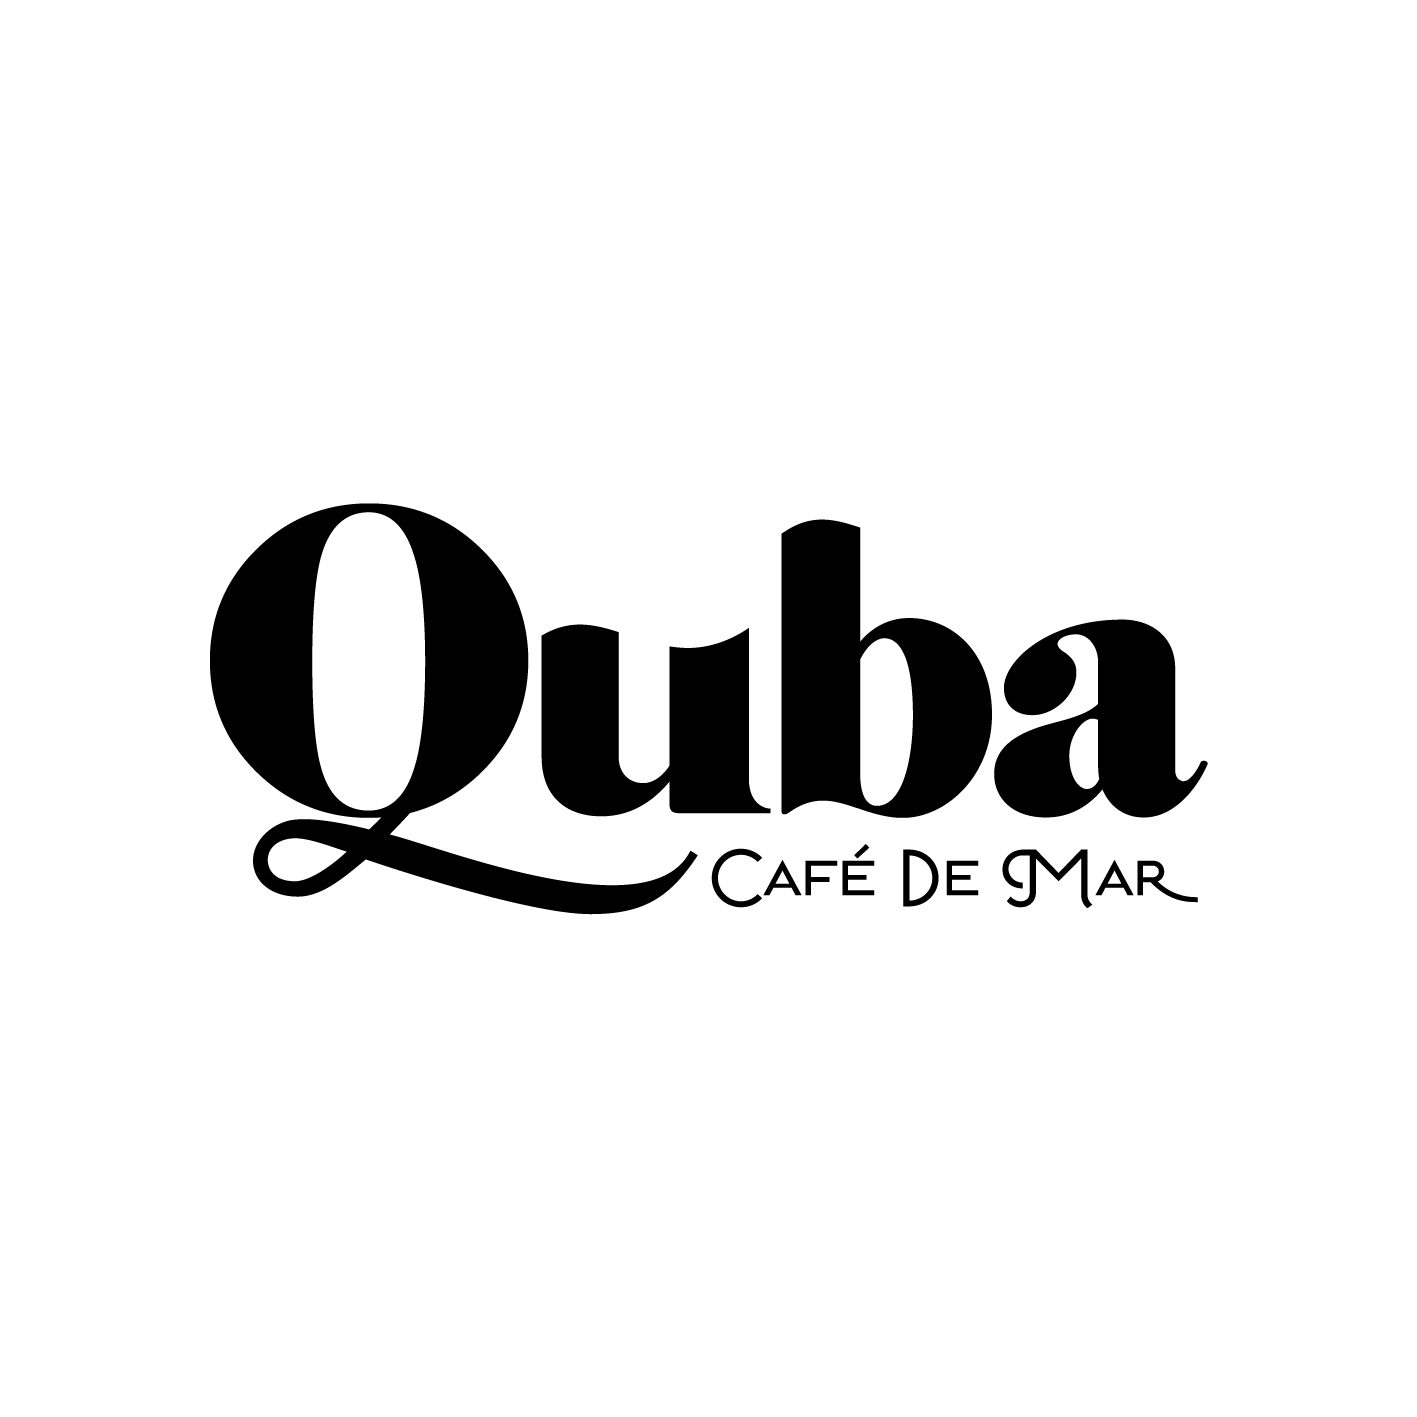 Quba Café de Mar